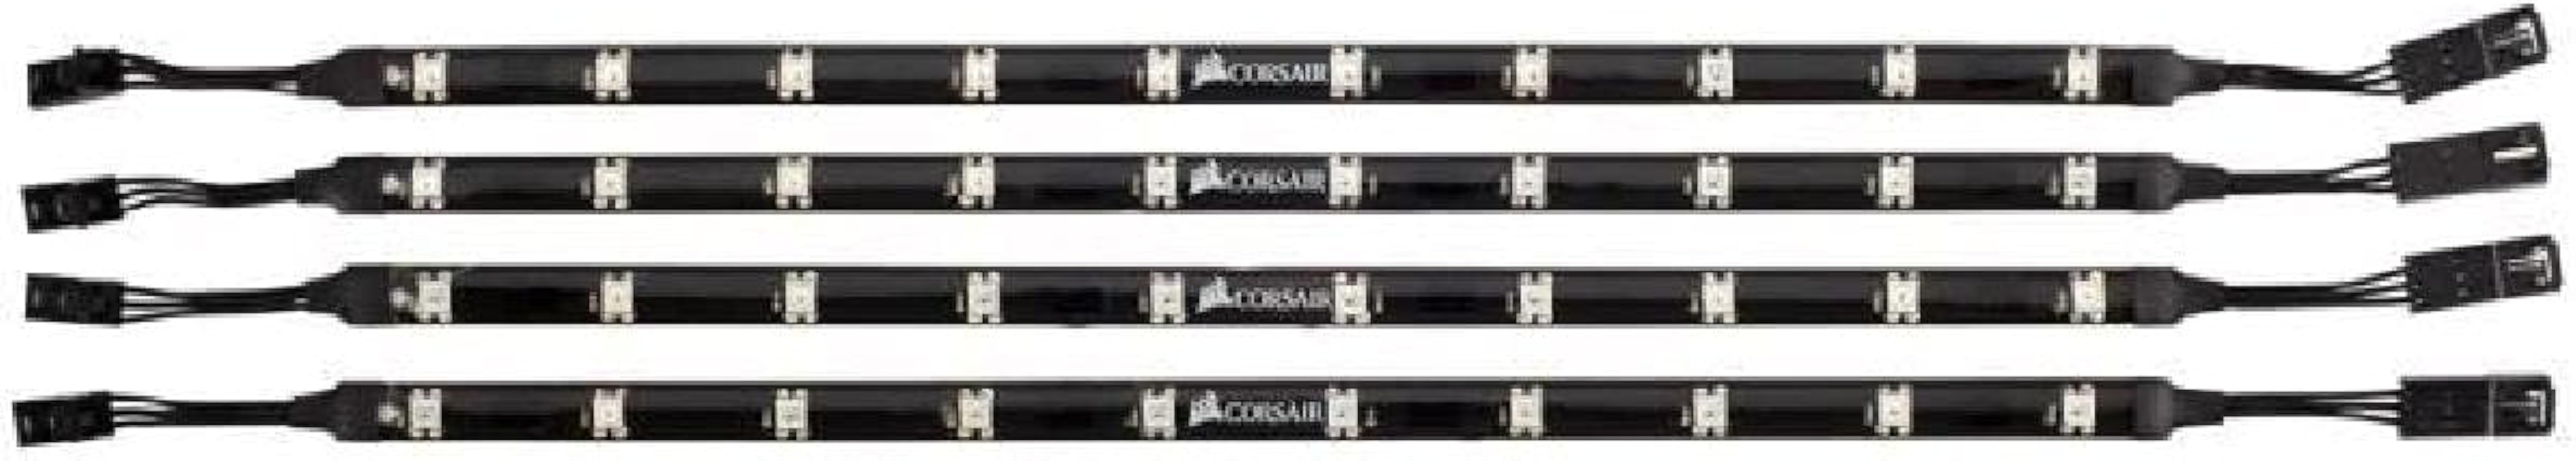 Corsair RGB LED Lighting PRO Expansion Kit (CL-8930002),Black